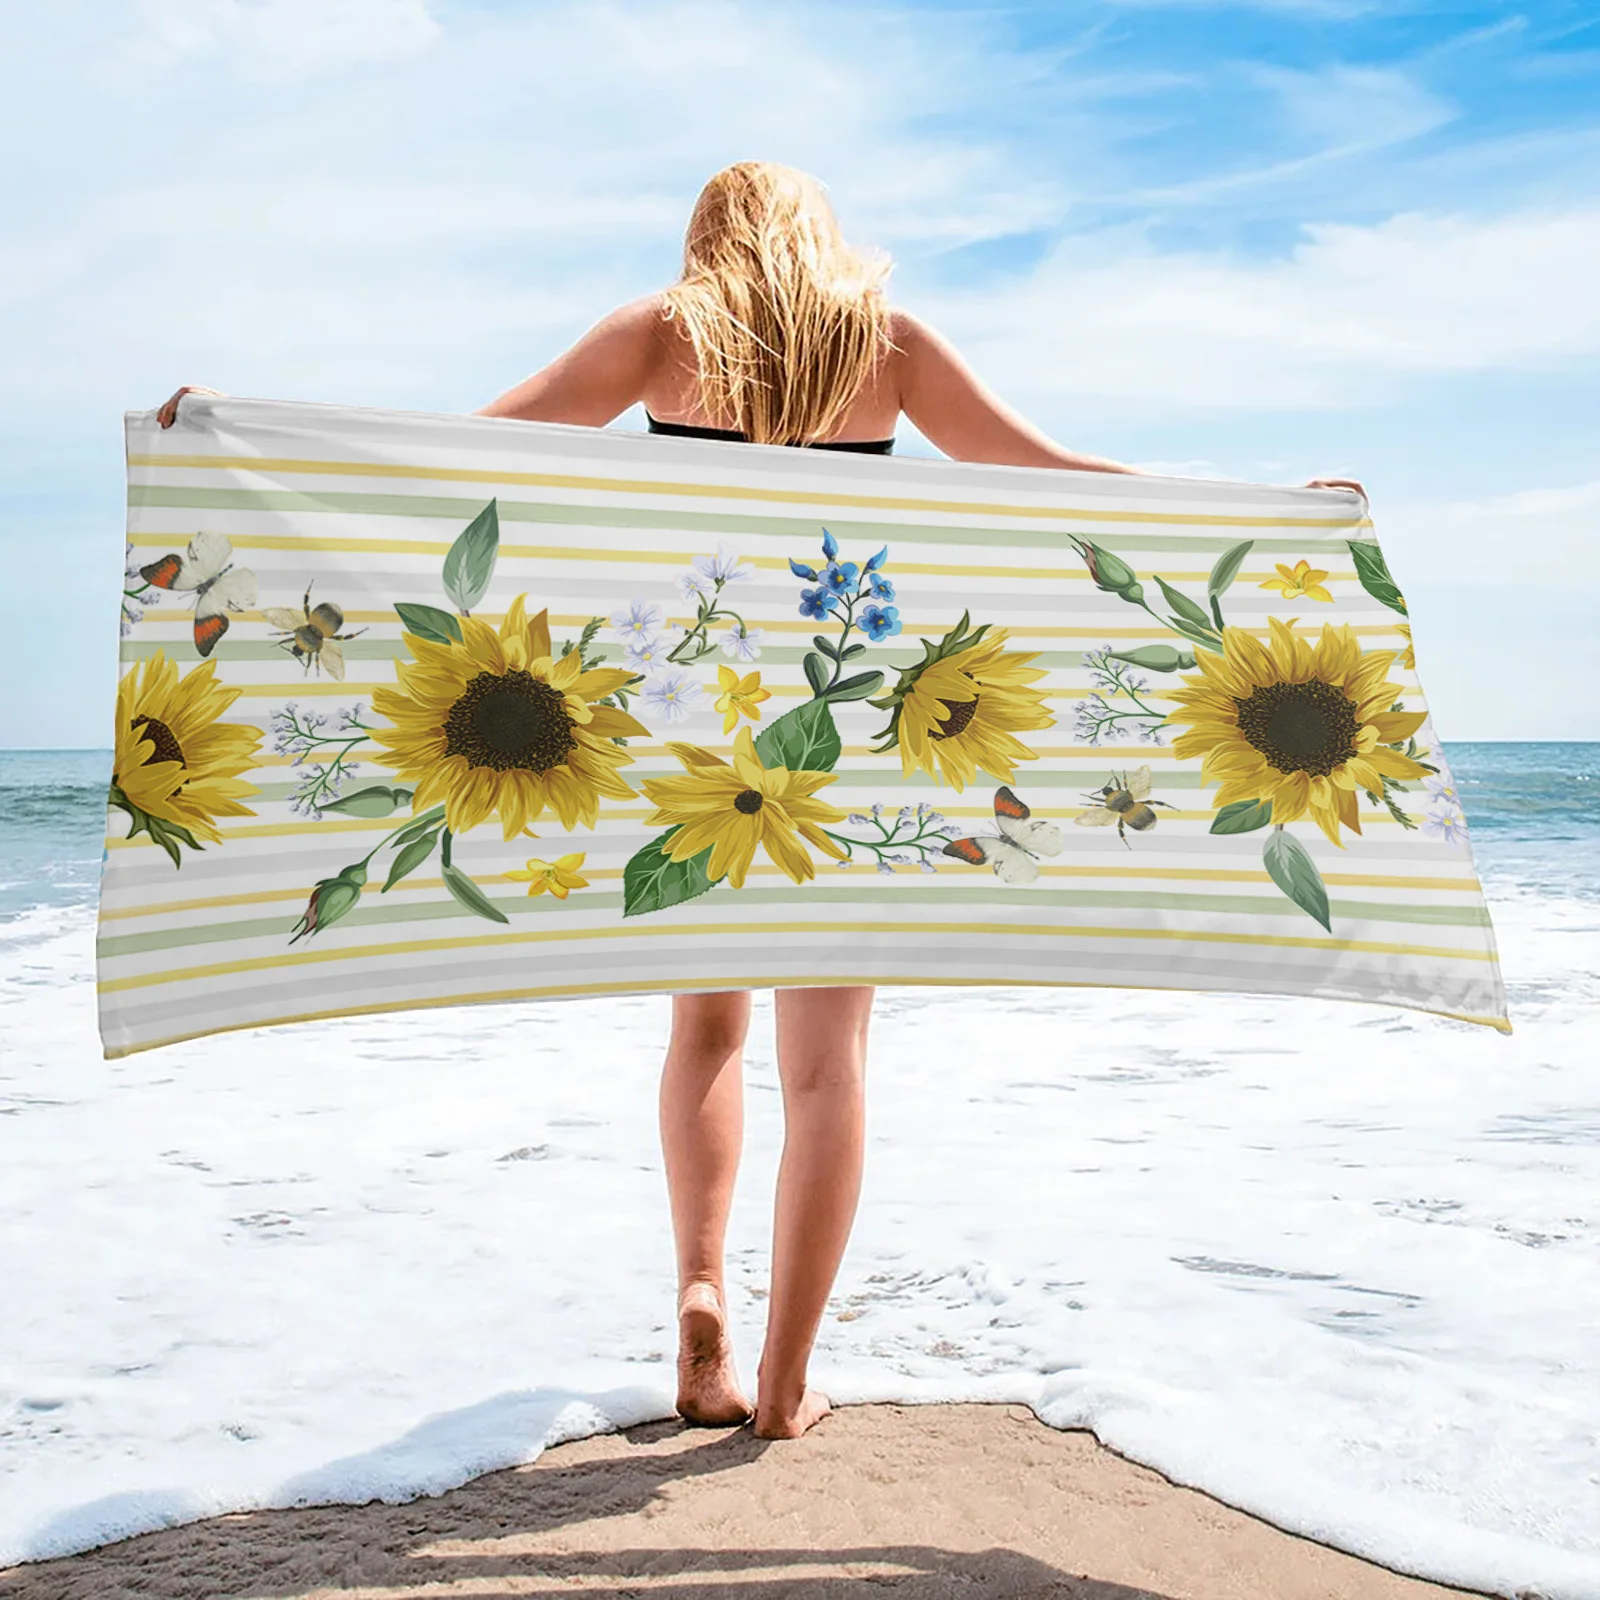 

Красивое пляжное полотенце с подсолнухами, роскошное быстросохнущее банное полотенце из микрофибры, коврик для йоги, спортивное полотенце ...